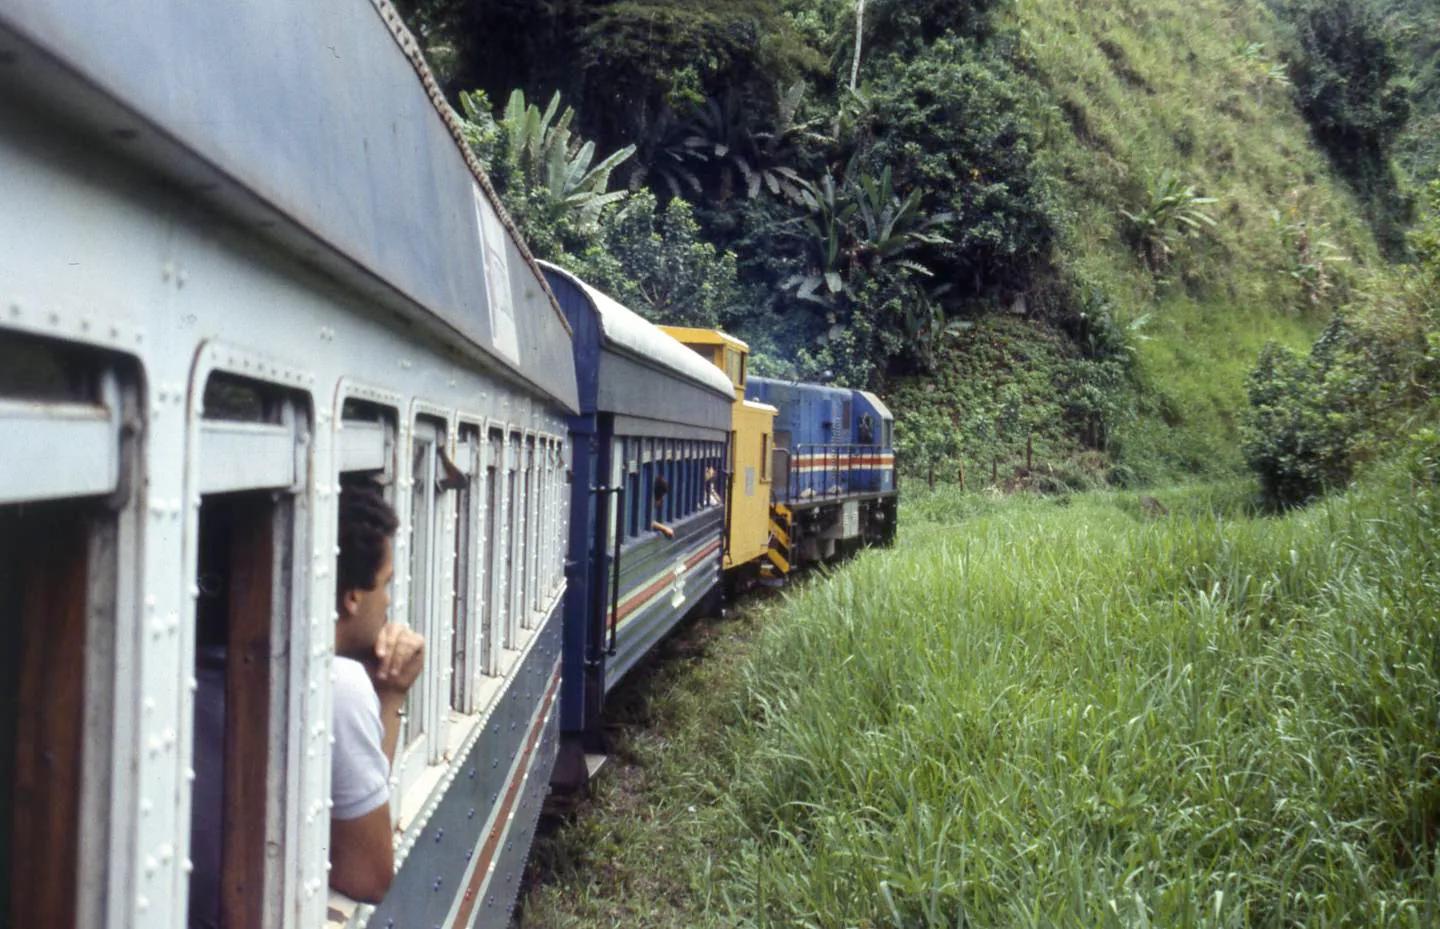 ferrocarril al atlantico costa rica - Cómo impacto la locomotora al costarricense